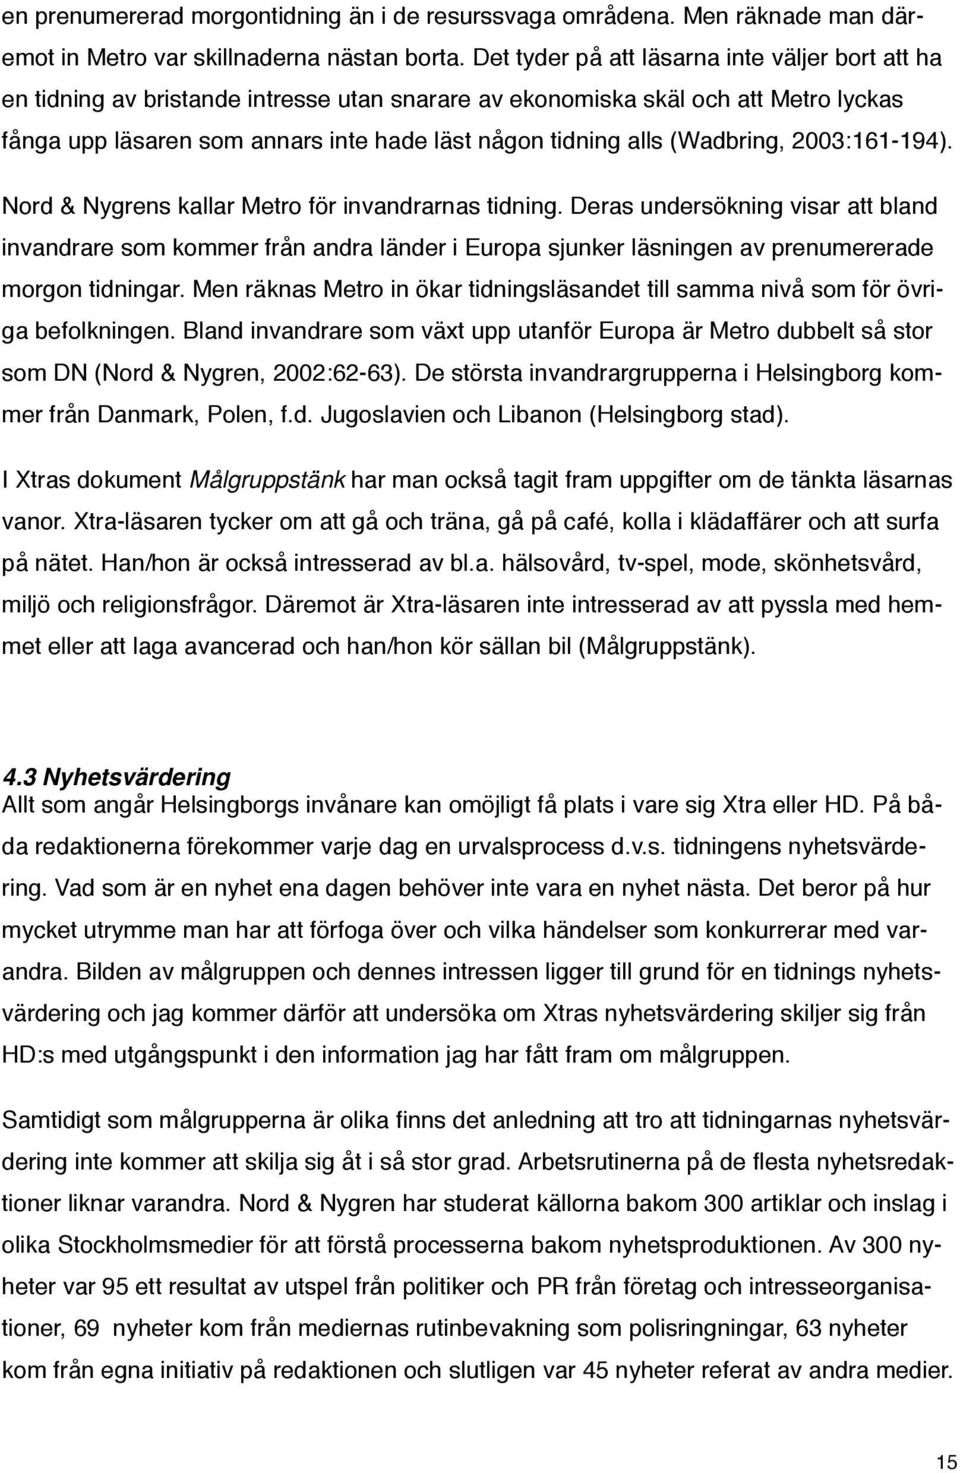 (Wadbring, 2003:161-194). Nord & Nygrens kallar Metro för invandrarnas tidning.